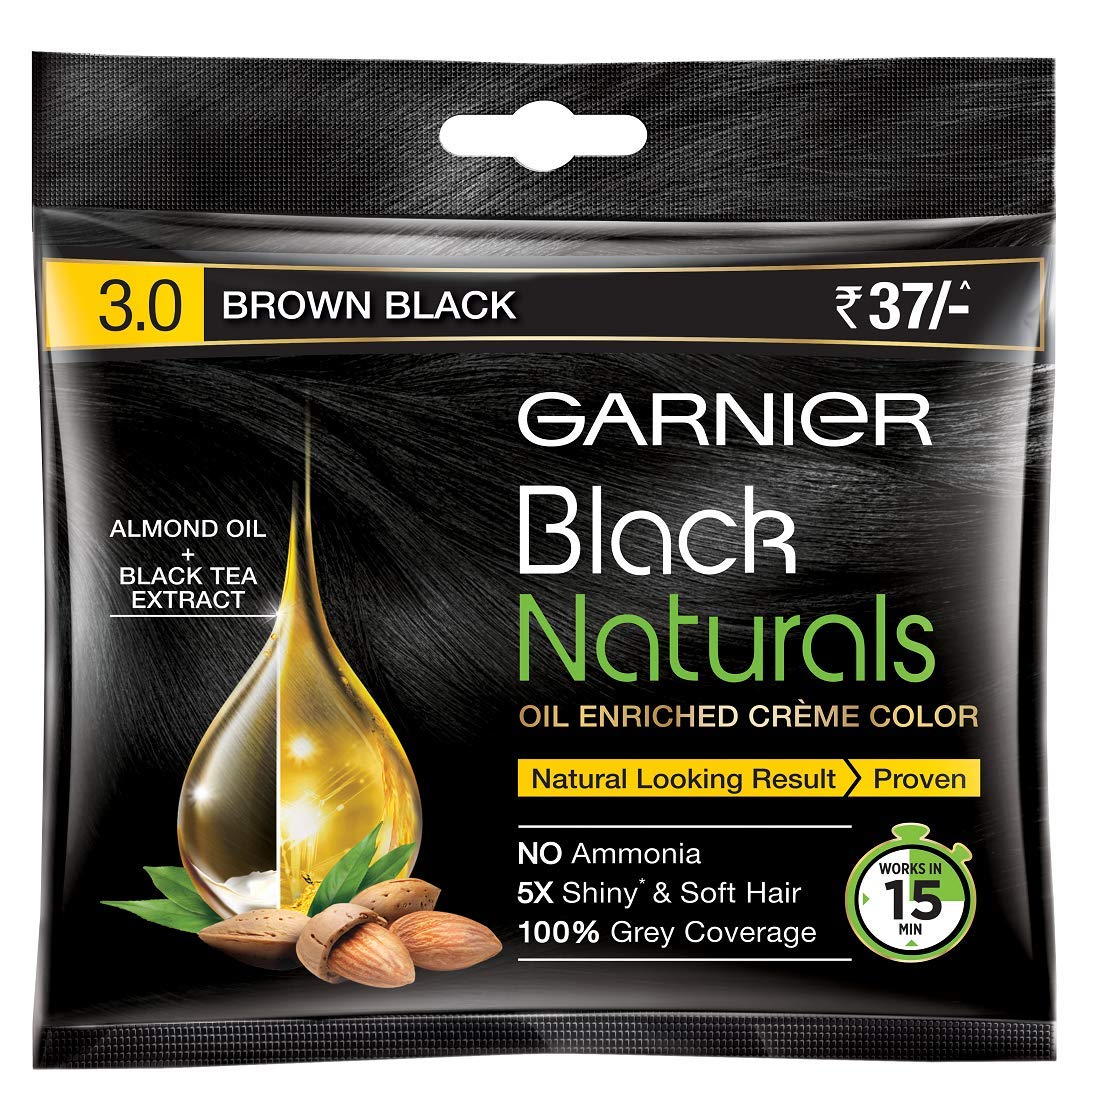 Garnier Black Naturals Hair Colour Shade 3 - Brown Black (20 ml + 20 gm)